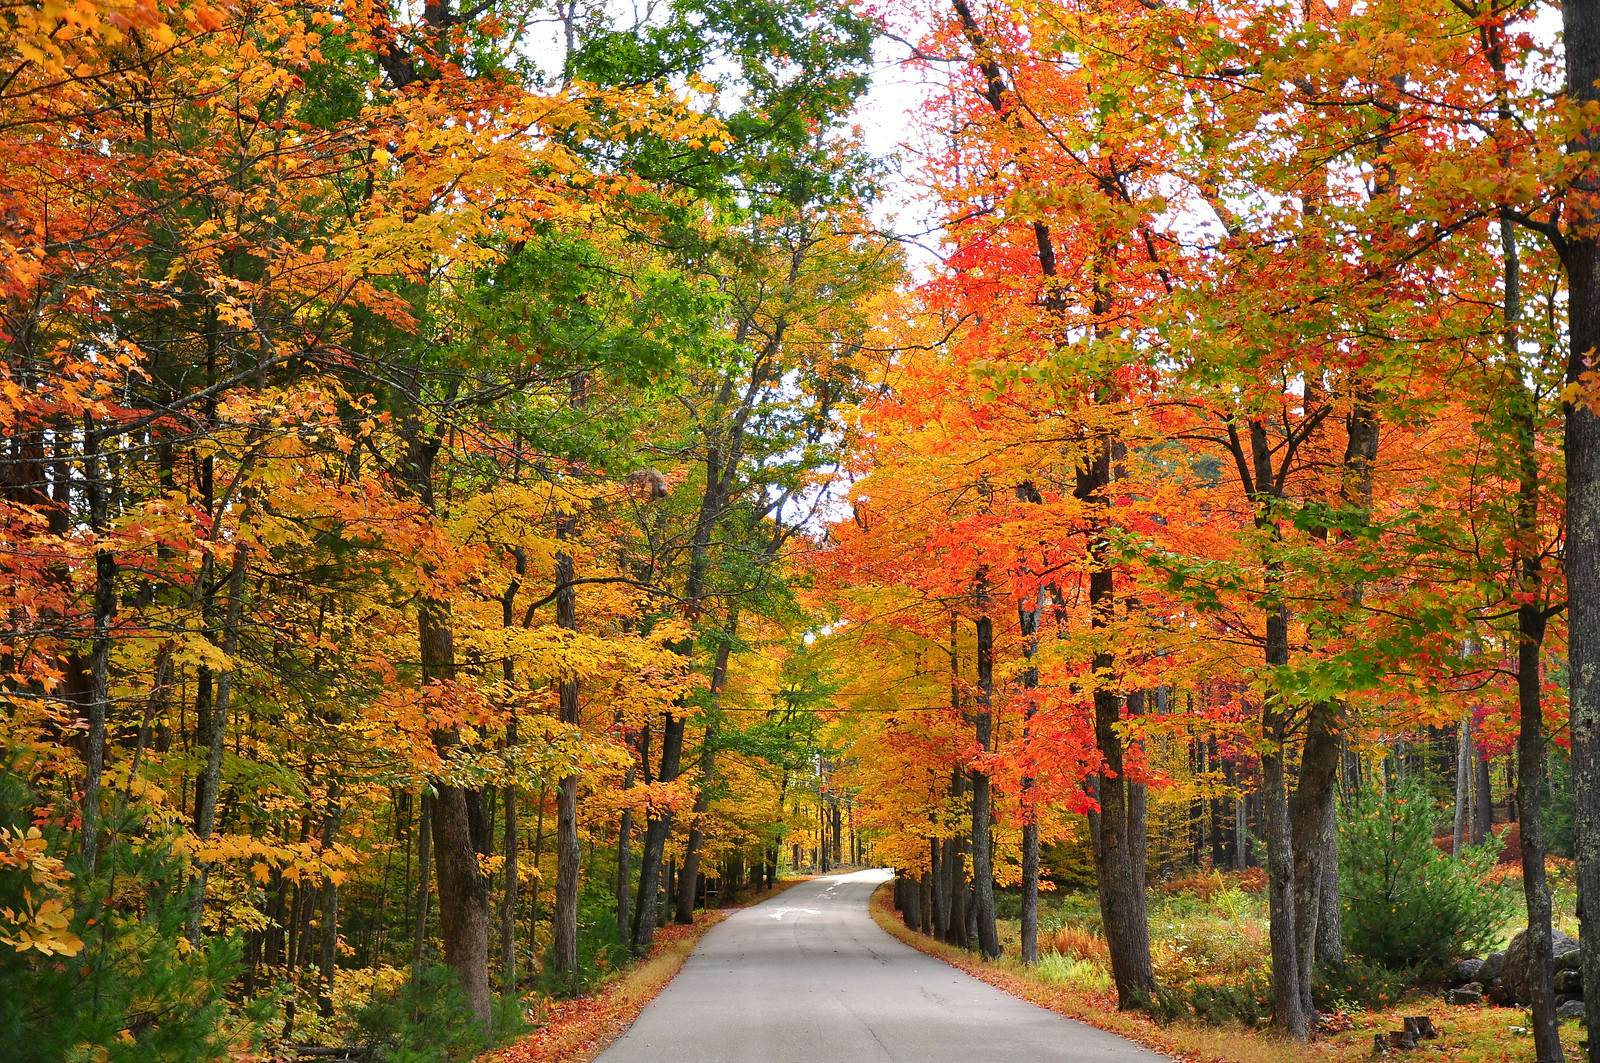 fall foliage around a pathway